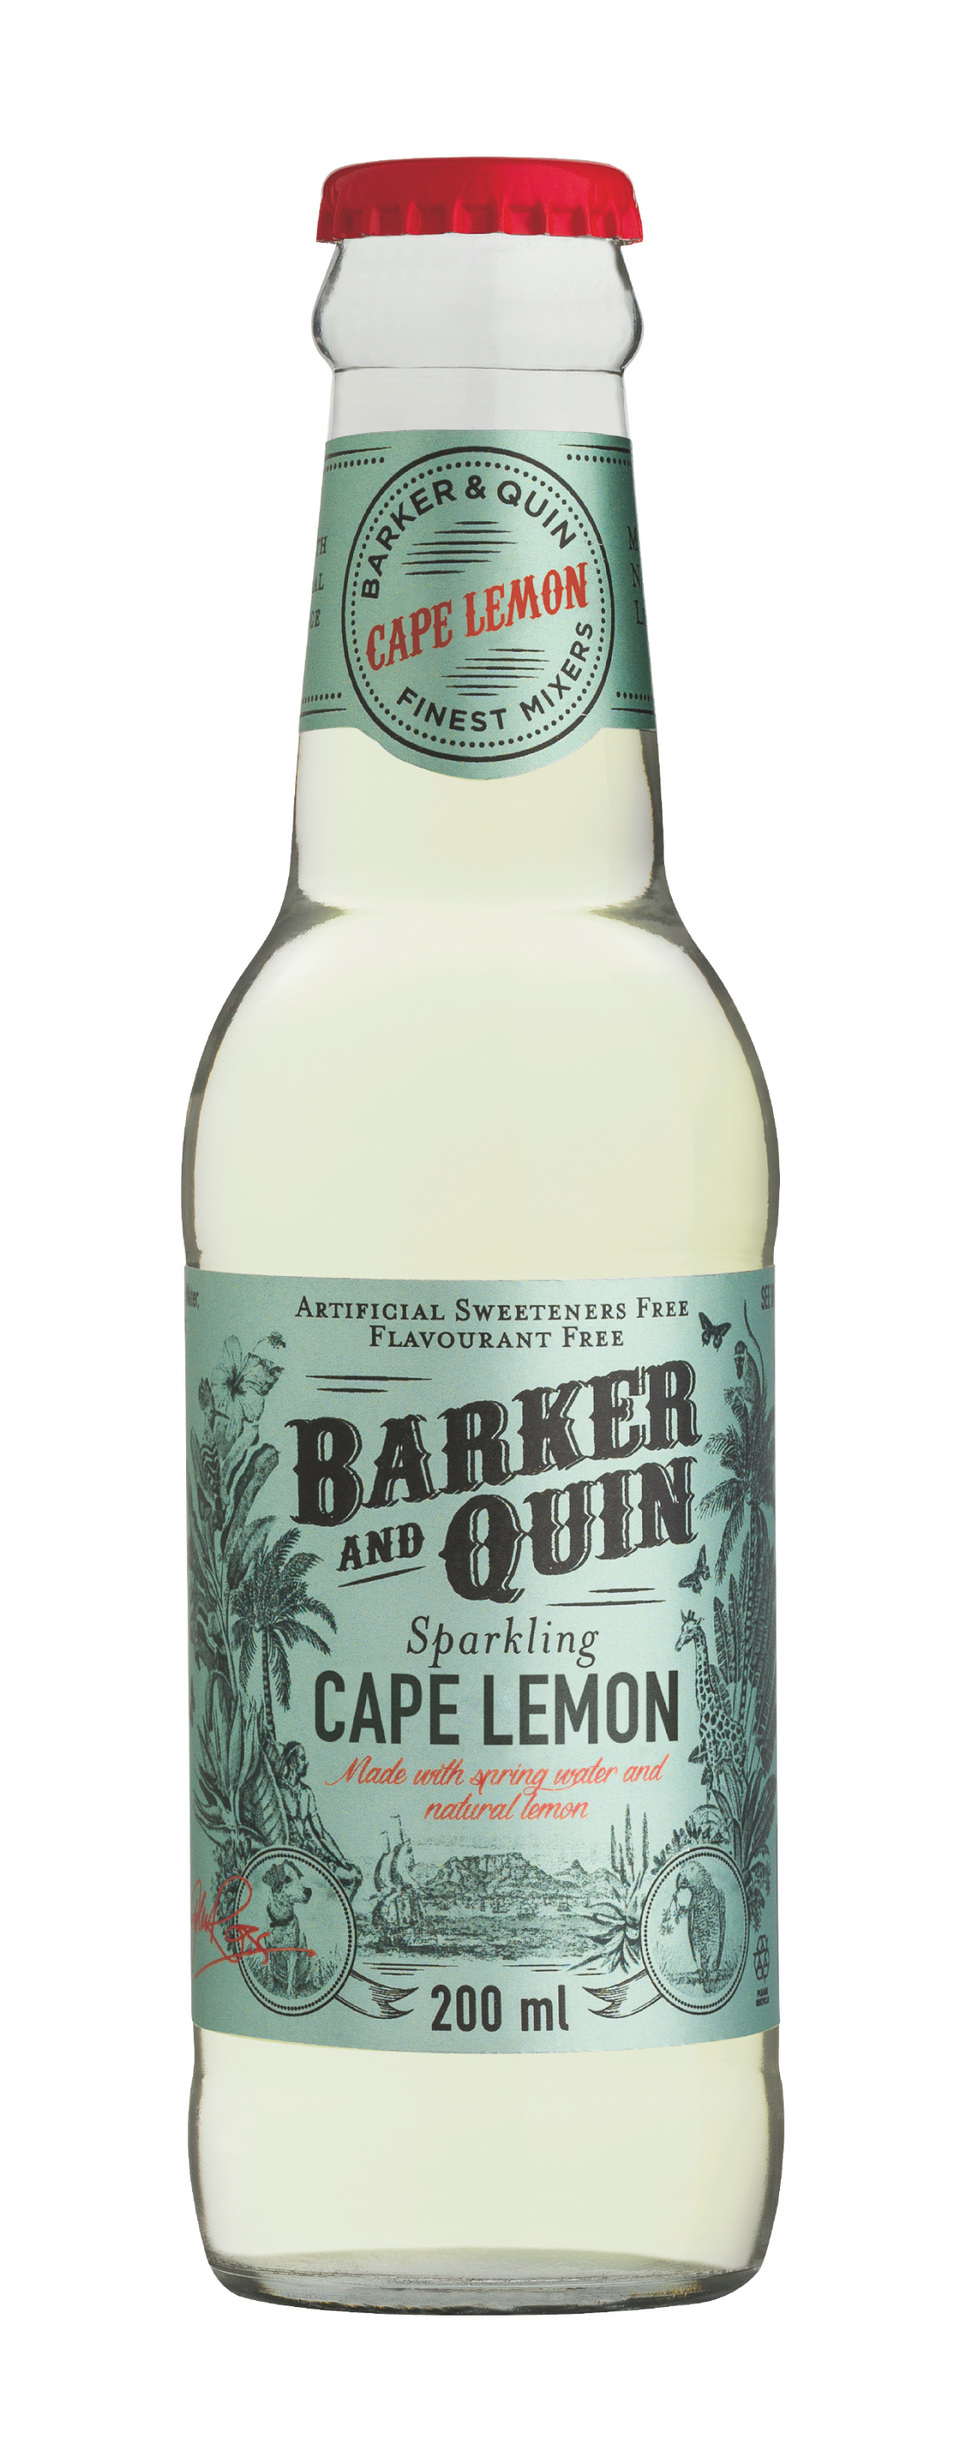 Barker & Quin Sparkling Cape Lemon Mixer Glass 24 x 200ml